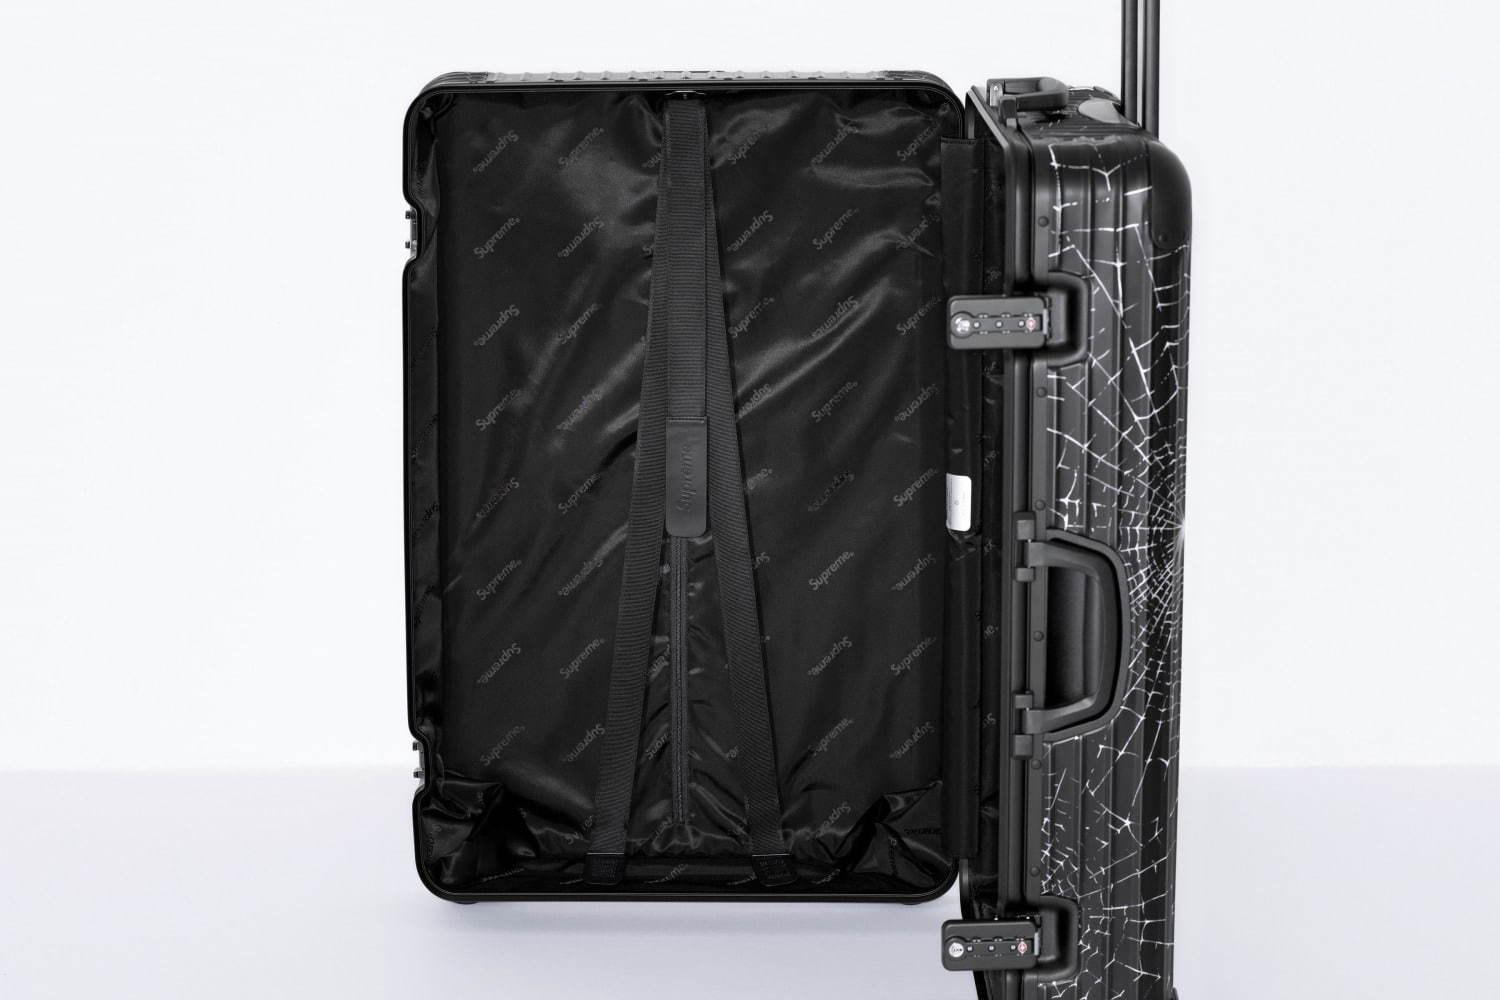 シュプリーム×リモワの限定スーツケース、スパイダー ウェブ＆ロゴを配